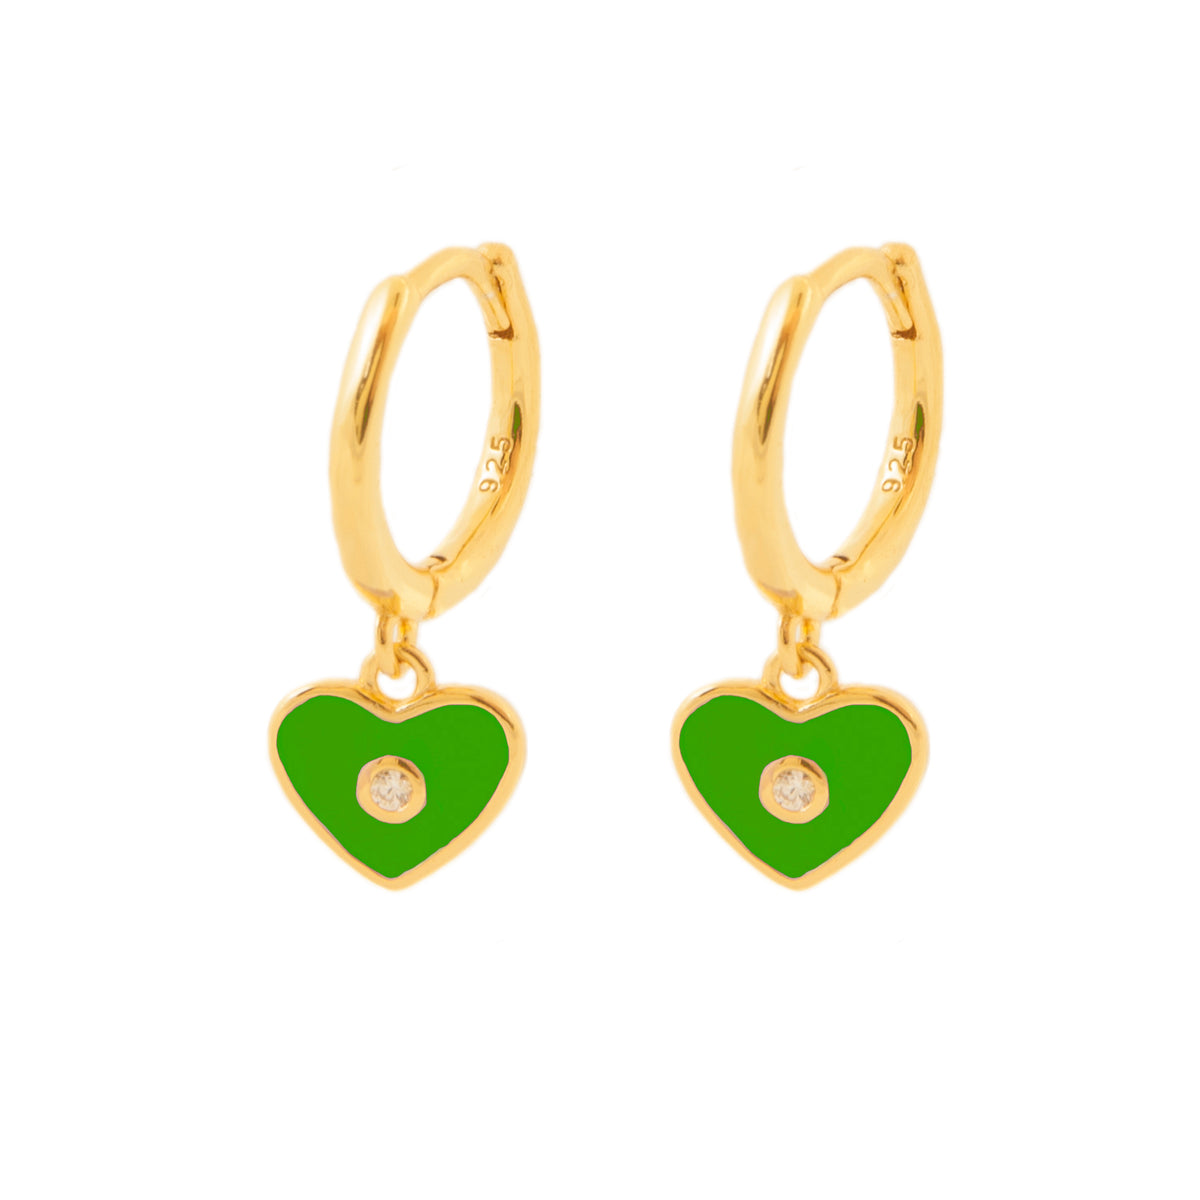 Green enamel heart gold